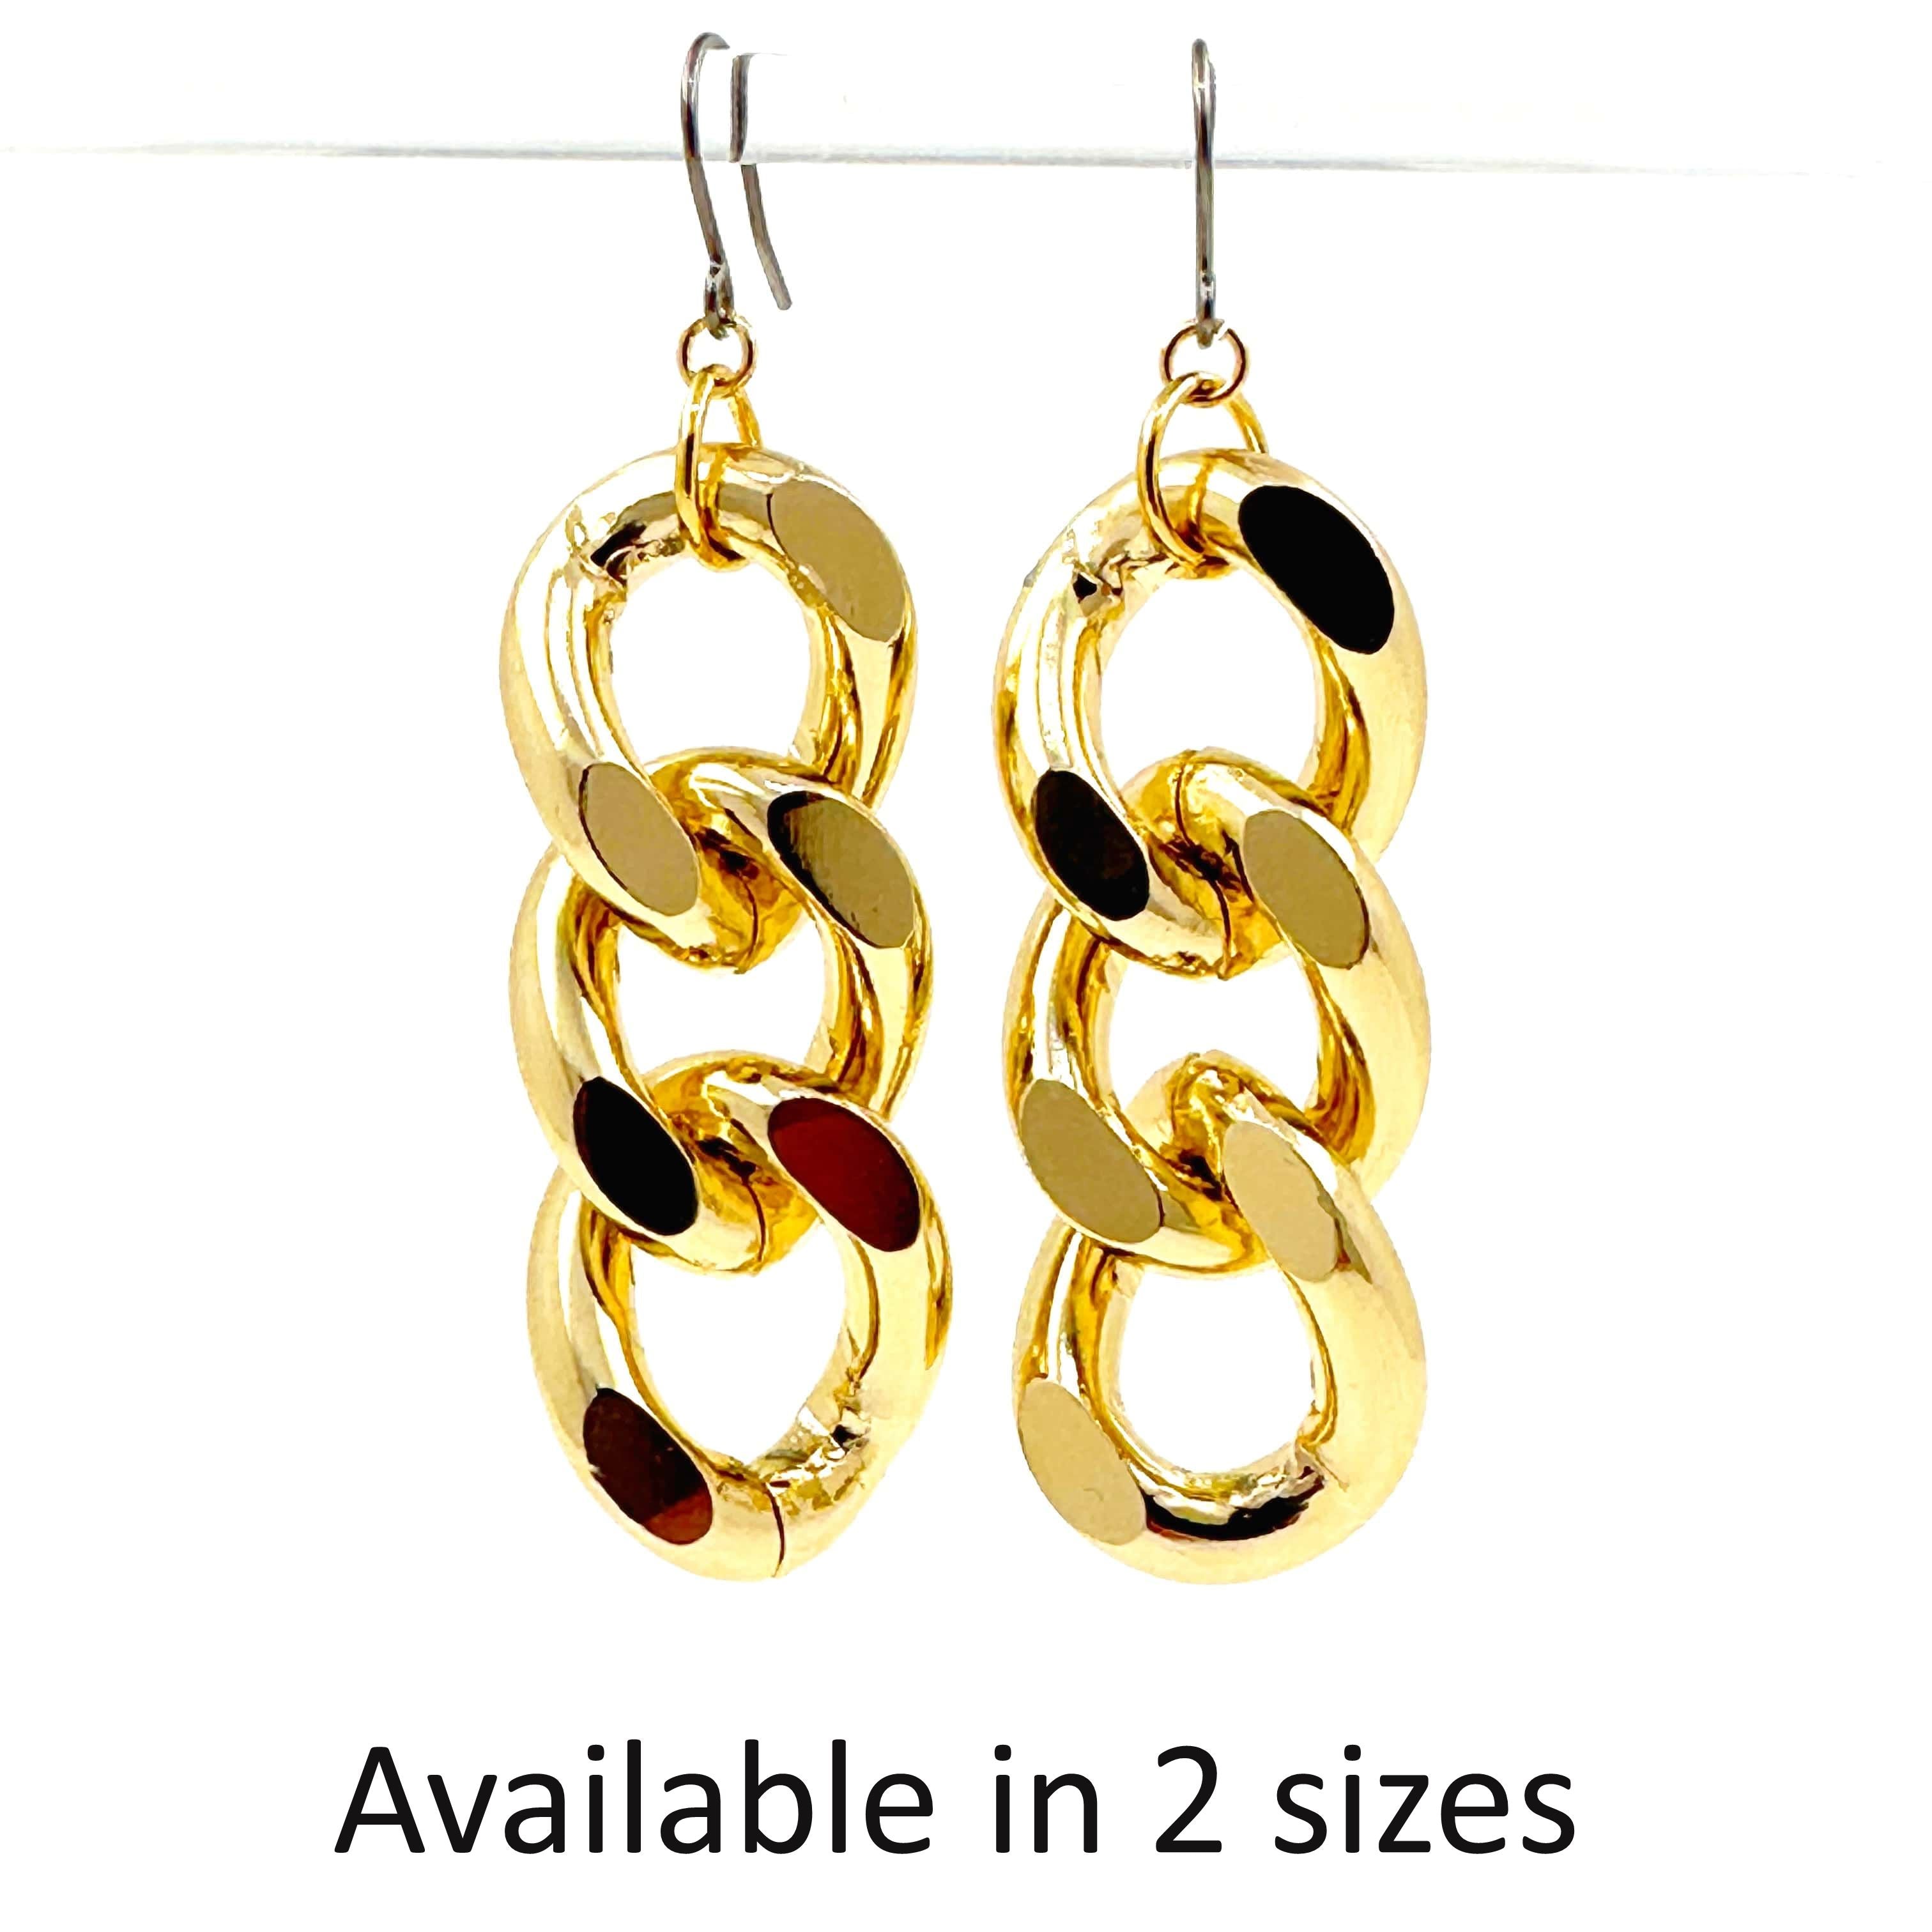 Gold chain earrings